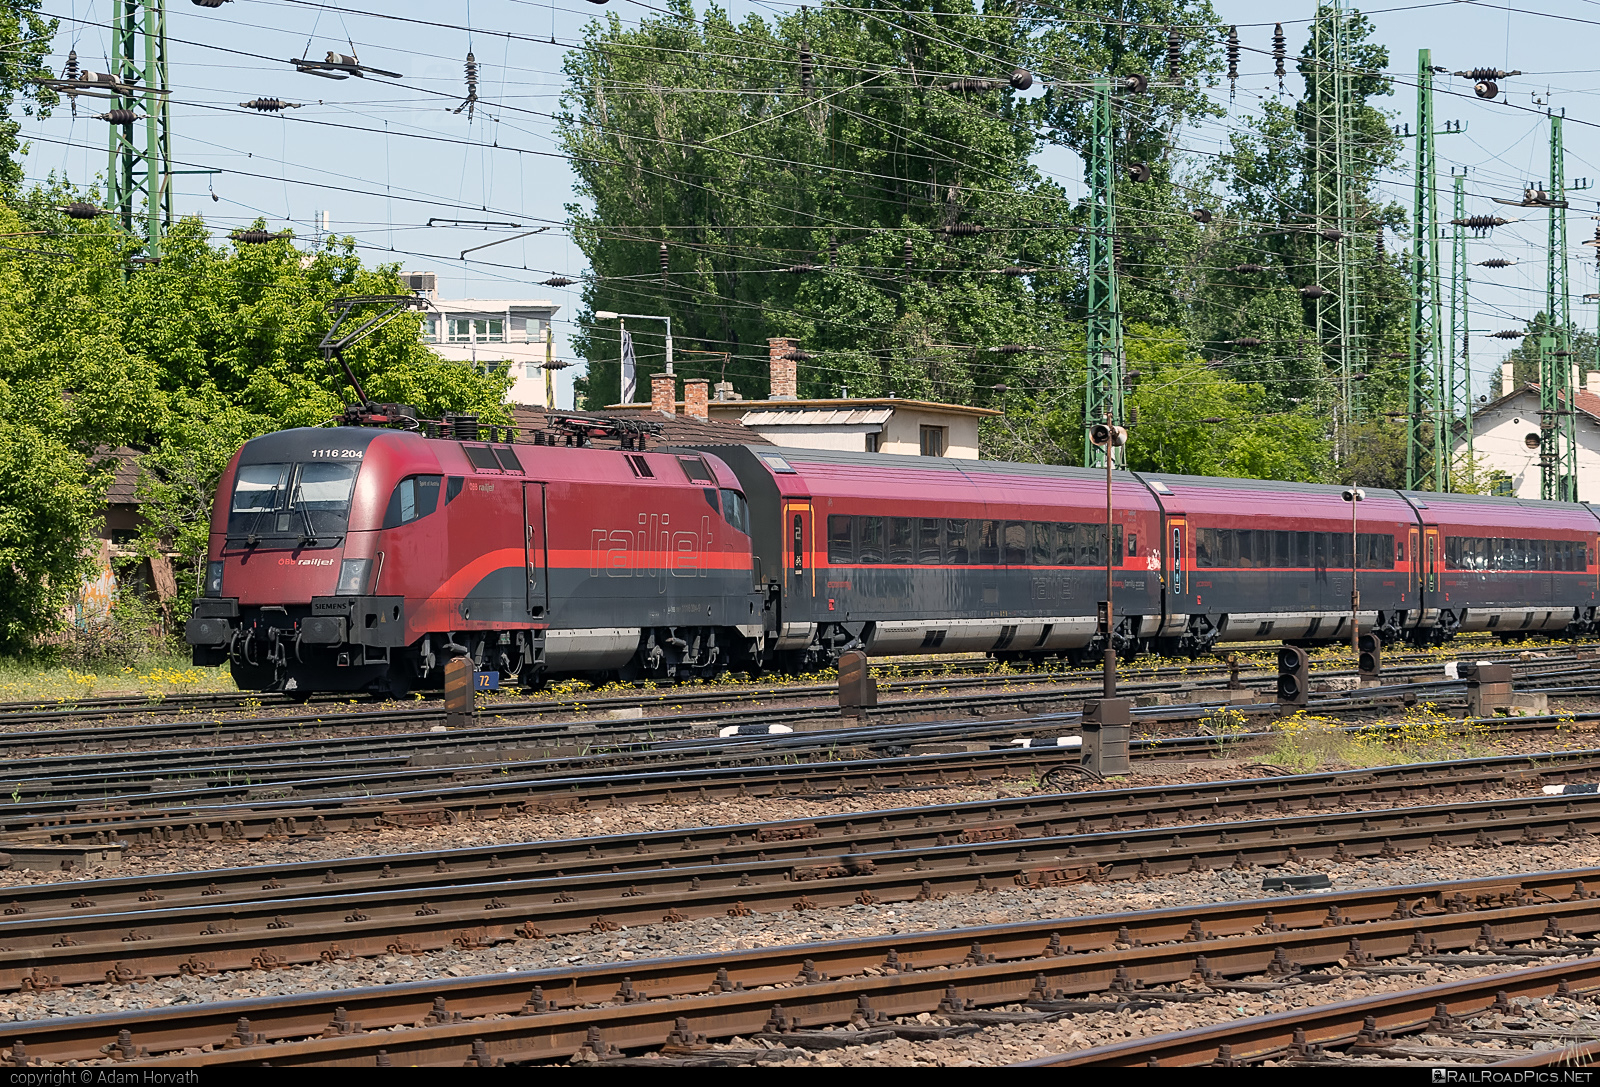 Siemens ES 64 U2 - 1116 204 operated by Österreichische Bundesbahnen #es64 #es64u2 #eurosprinter #obb #obbrailjet #osterreichischebundesbahnen #railjet #siemens #siemensEs64 #siemensEs64u2 #siemenstaurus #taurus #tauruslocomotive